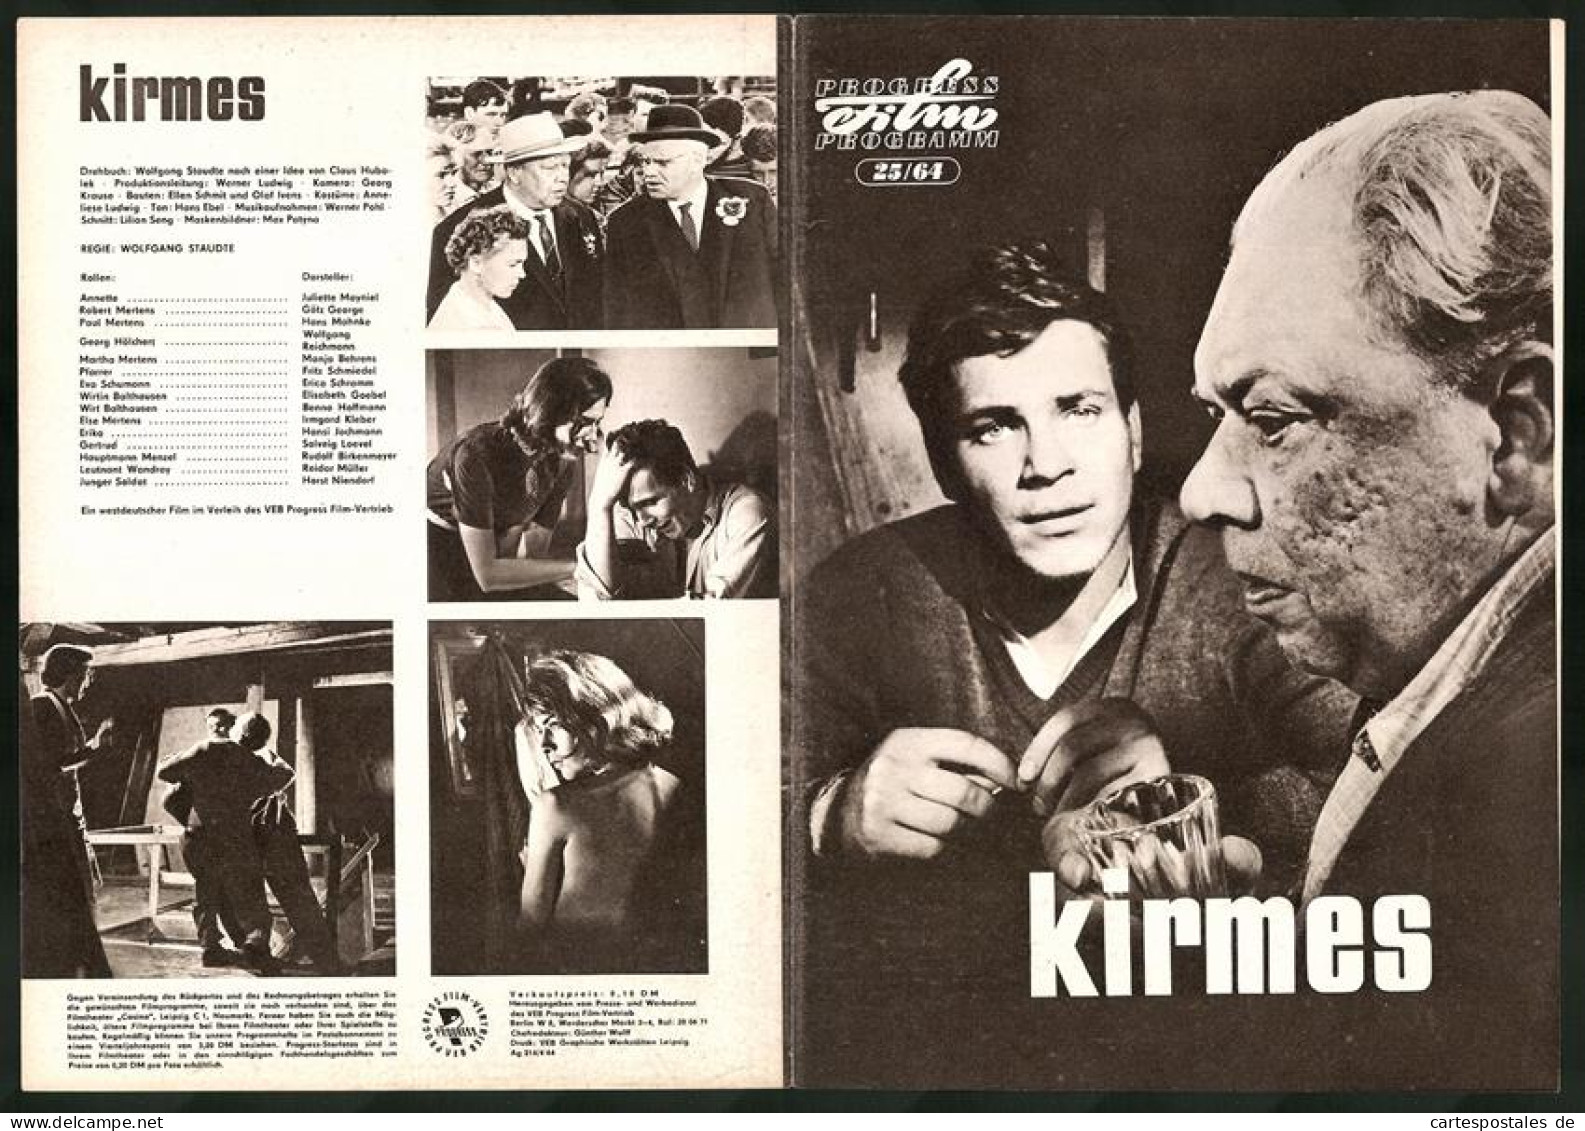 Filmprogramm PFP Nr. 25 /64, Kirmes, Juliette Mayniel, Götz George, Regie: Wolfgang Staudte  - Zeitschriften